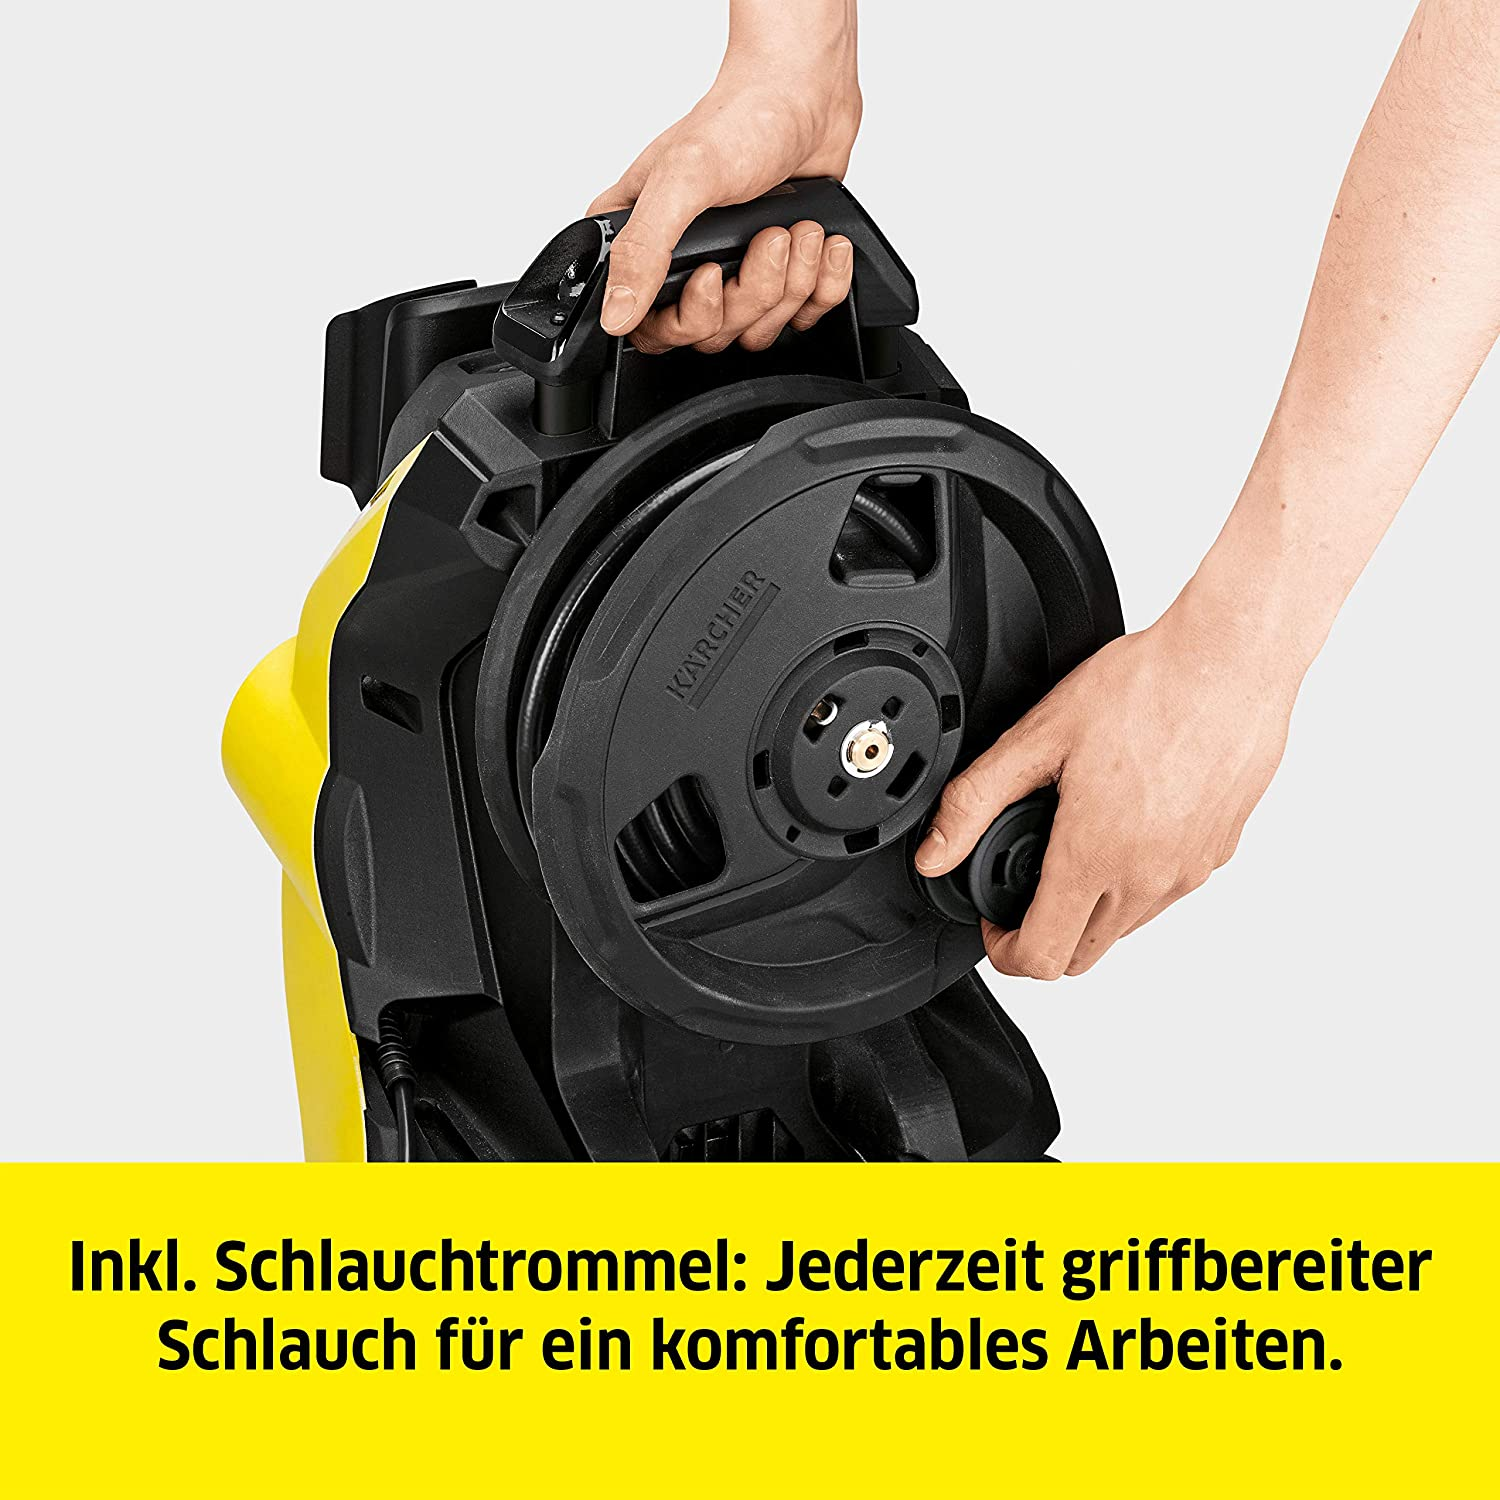 KÄRCHER K4 Premium Power Control gelb Hochdruckreiniger, Home